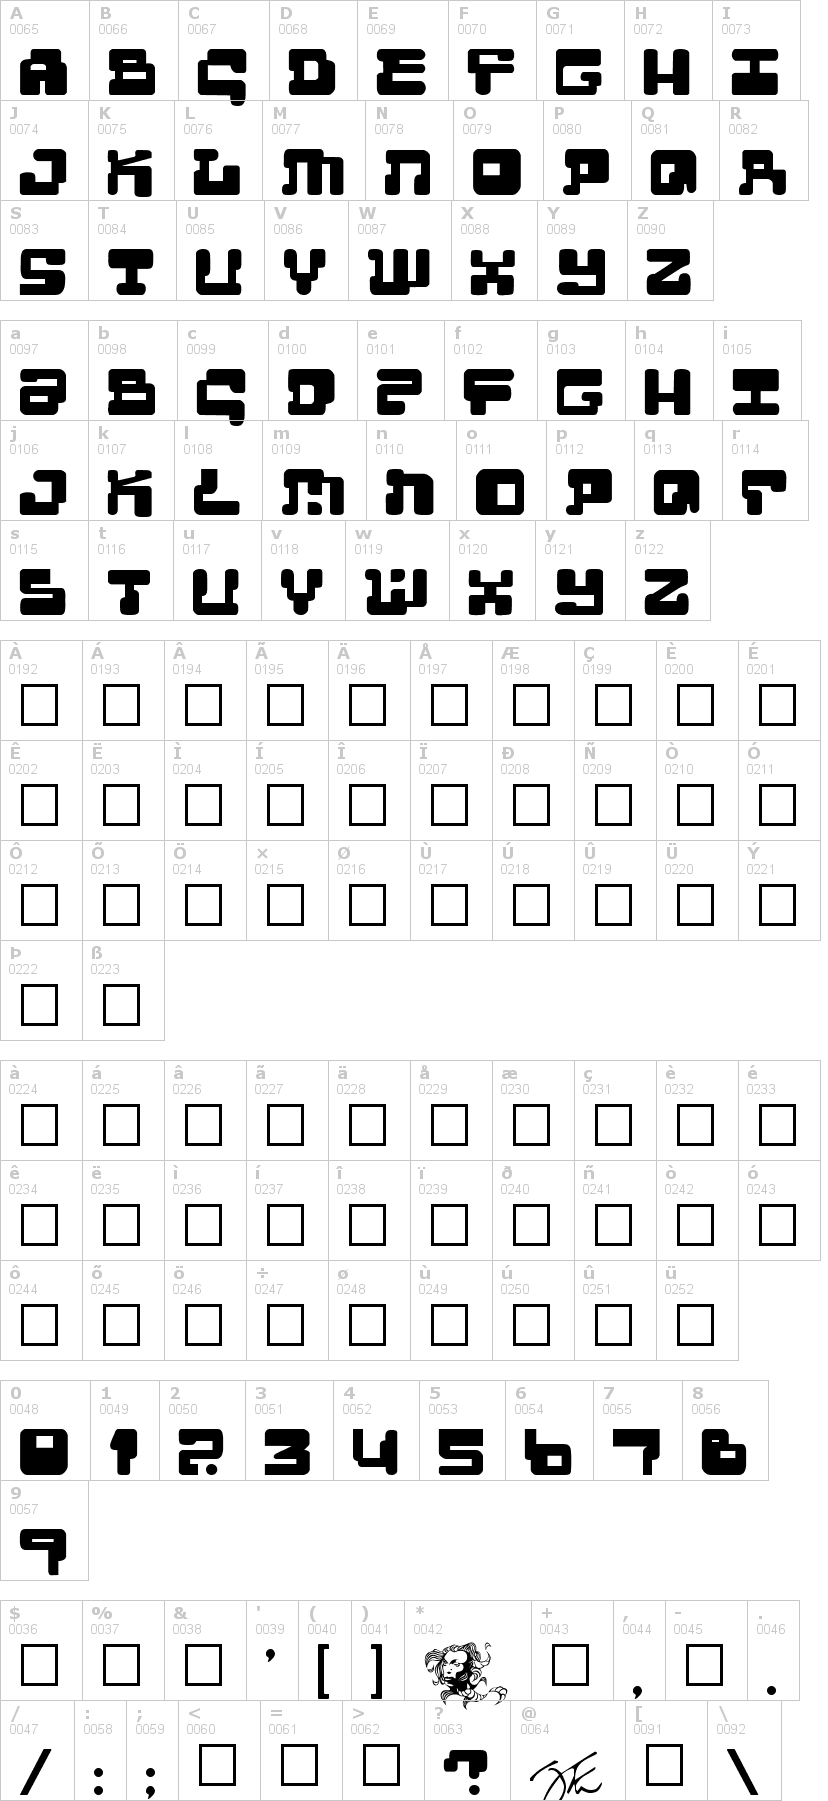 Lettere dell'alfabeto del font moultipass-2 con le quali è possibile realizzare adesivi prespaziati